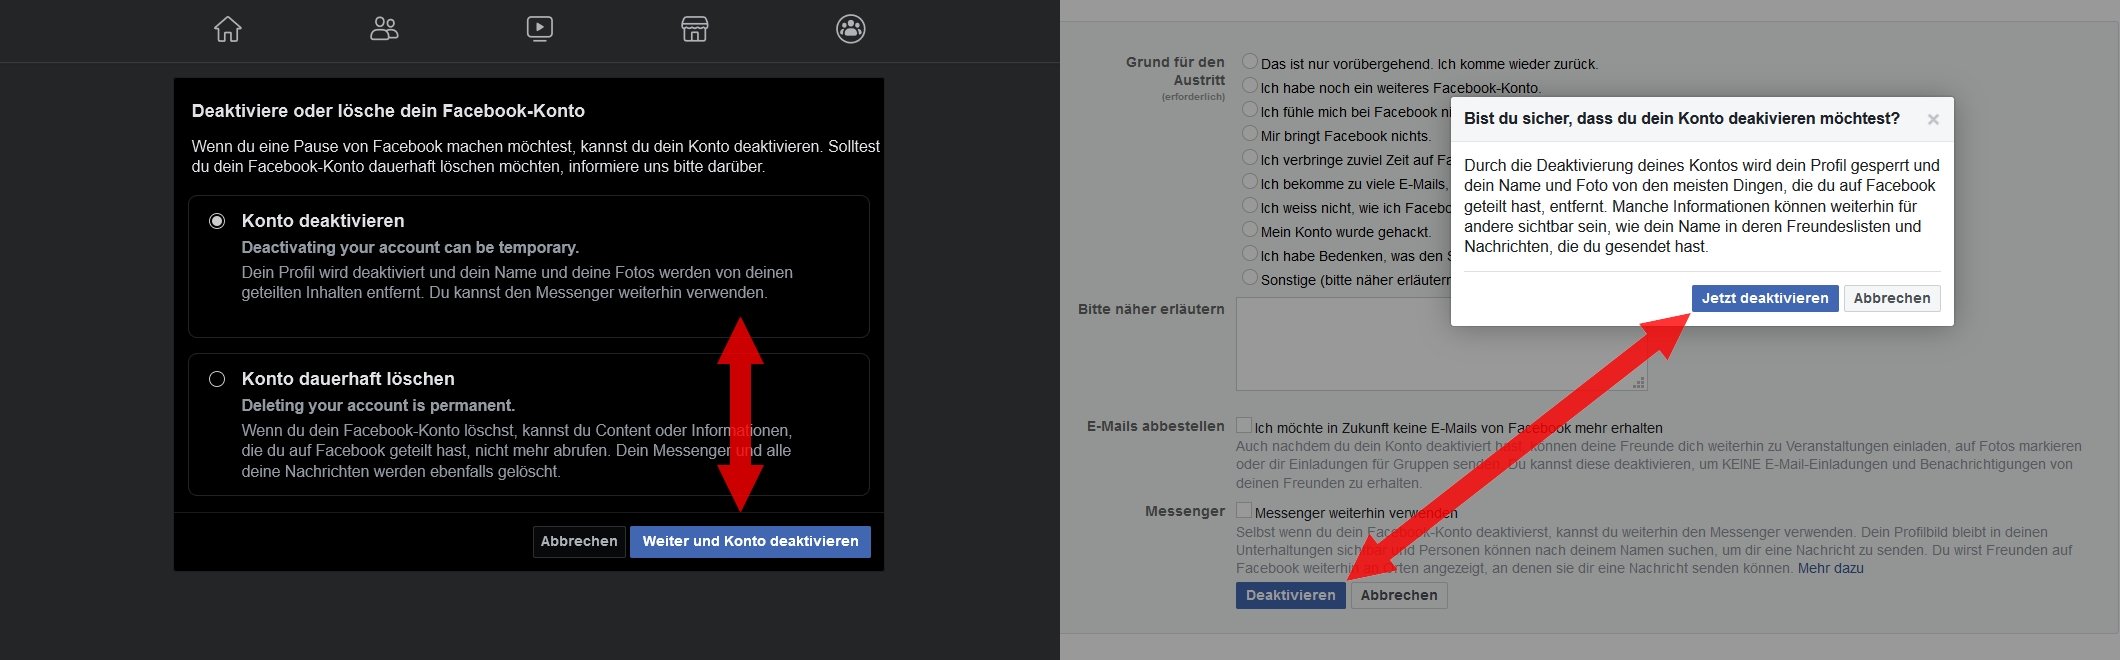 Deaktivieren anmelden facebook automatisch Mac: Nutzer